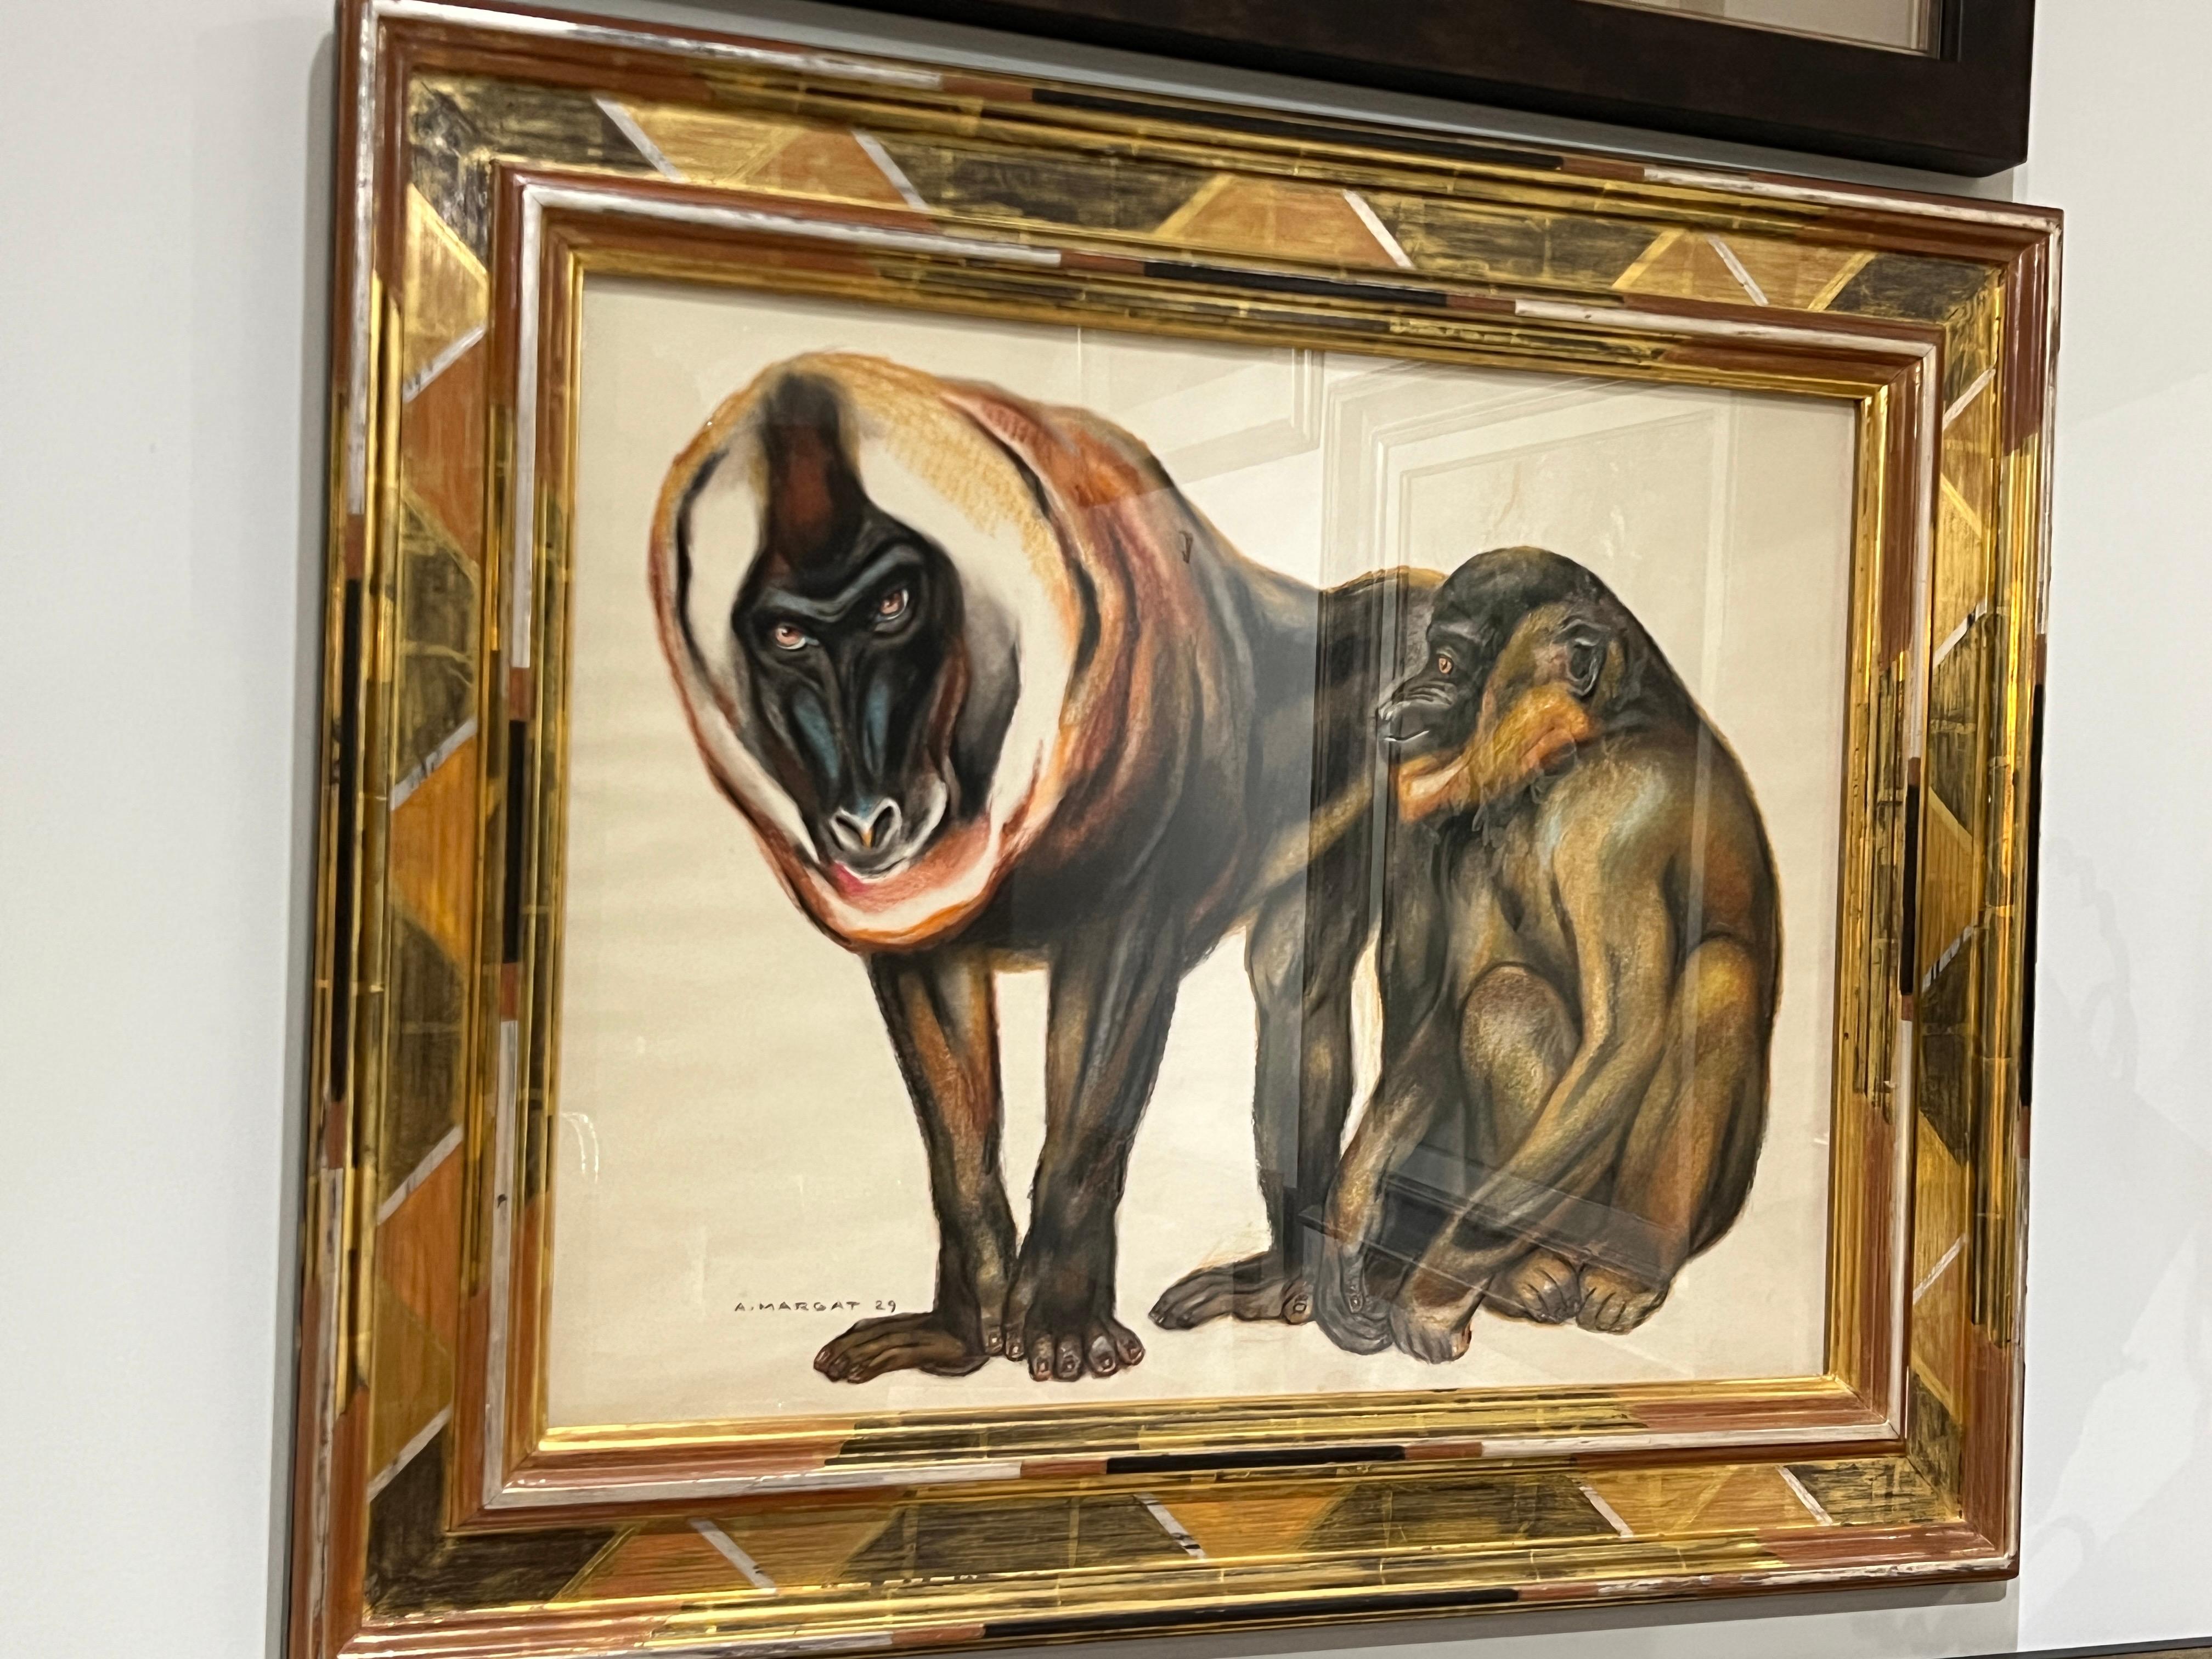 Créée par Andre Margat en 1929, cette peinture au pastel gouaché représente deux babouins aux couleurs vives et éclatantes. Les babouins eux-mêmes ont un pelage noir de jais avec des accents blancs, ce qui leur confère une présence réaliste dans